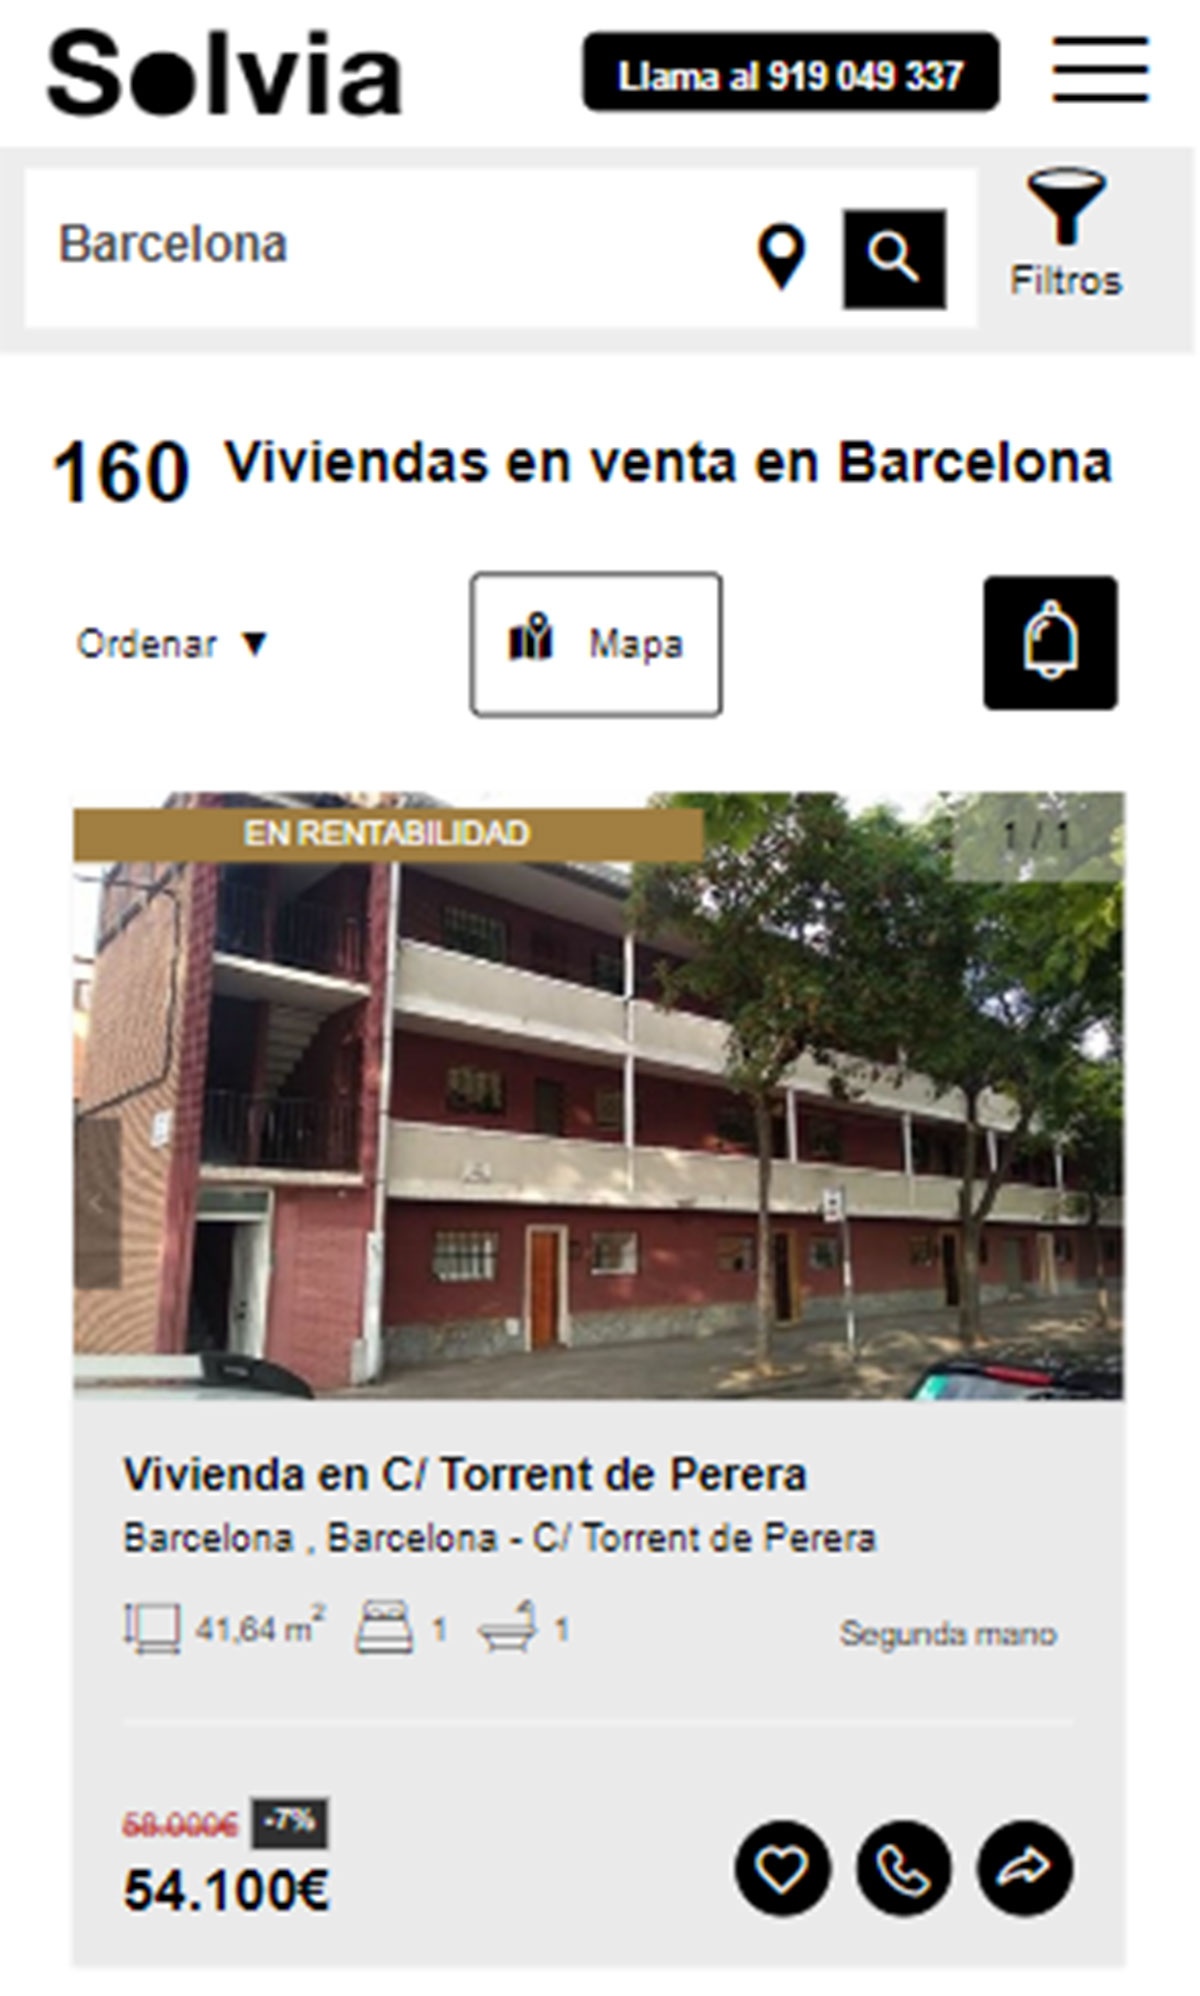 Piso en la ciudad de Barcelona por 54.100 euros